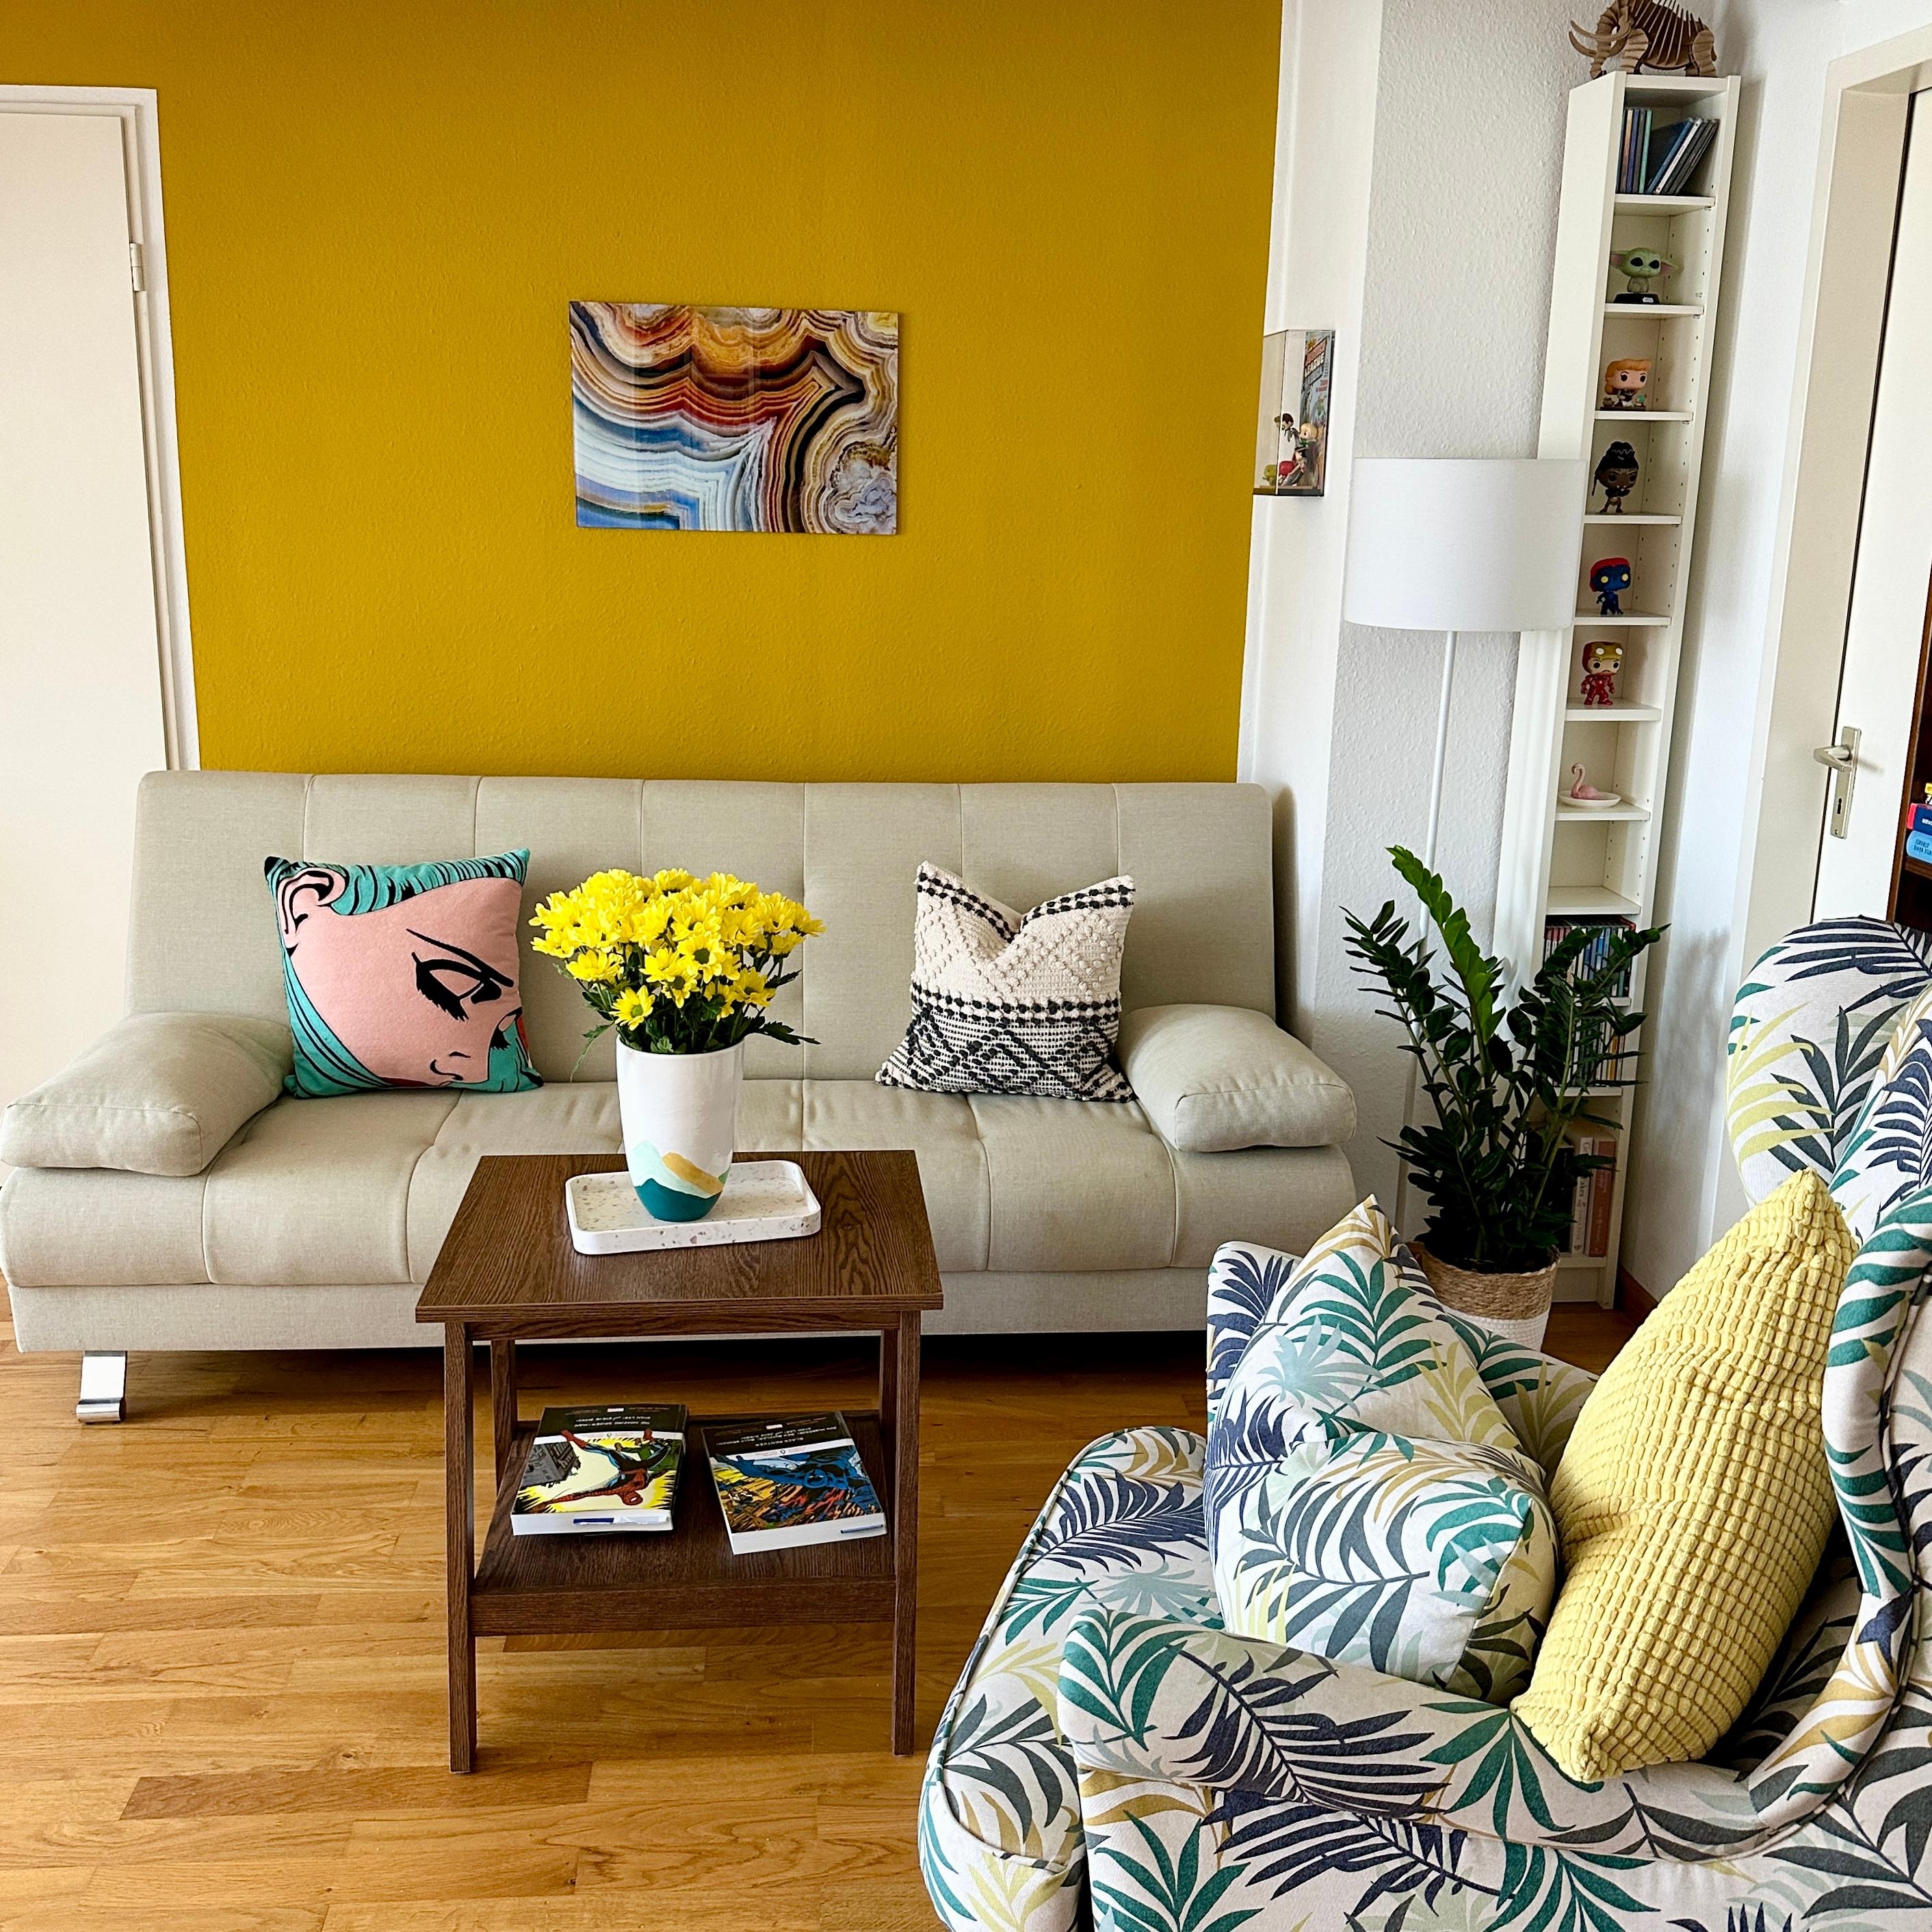 Wohnzimmer im Spätsommer 
#couchstyle #wohnzimmer #dachgeschoss #blumen #kunst #farbenfroh